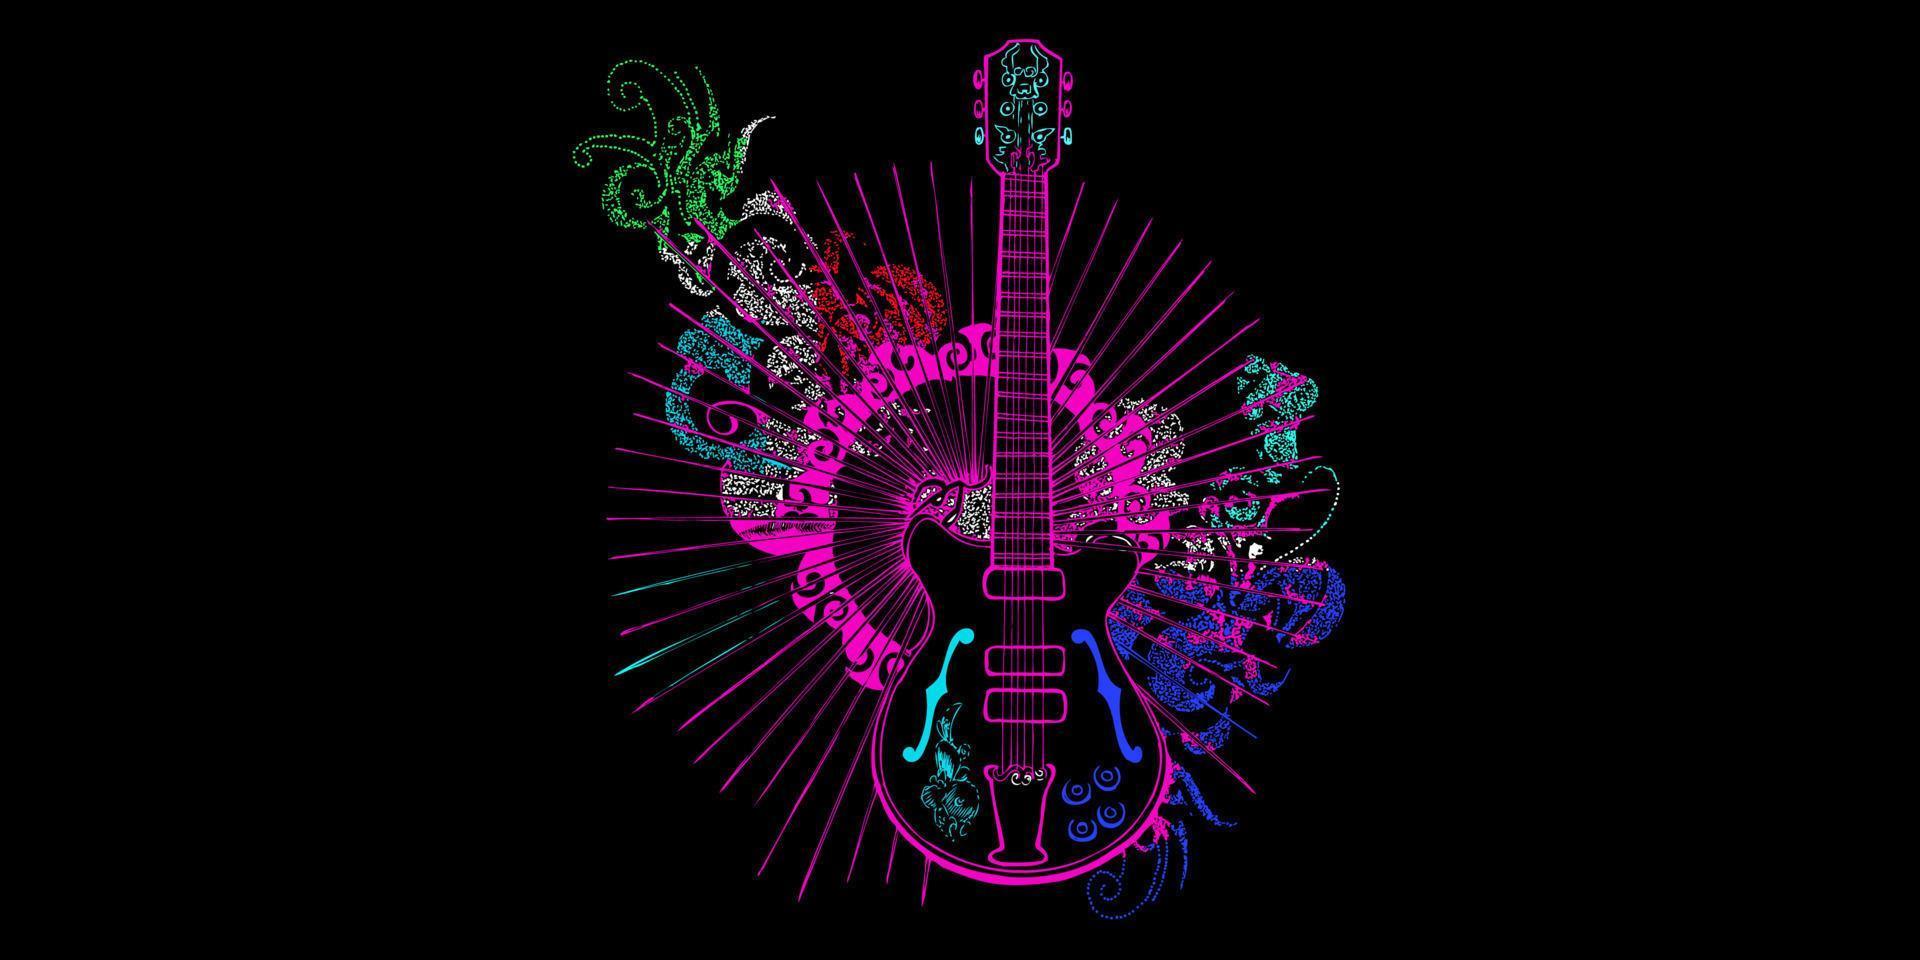 arte colorido del vector de la guitarra